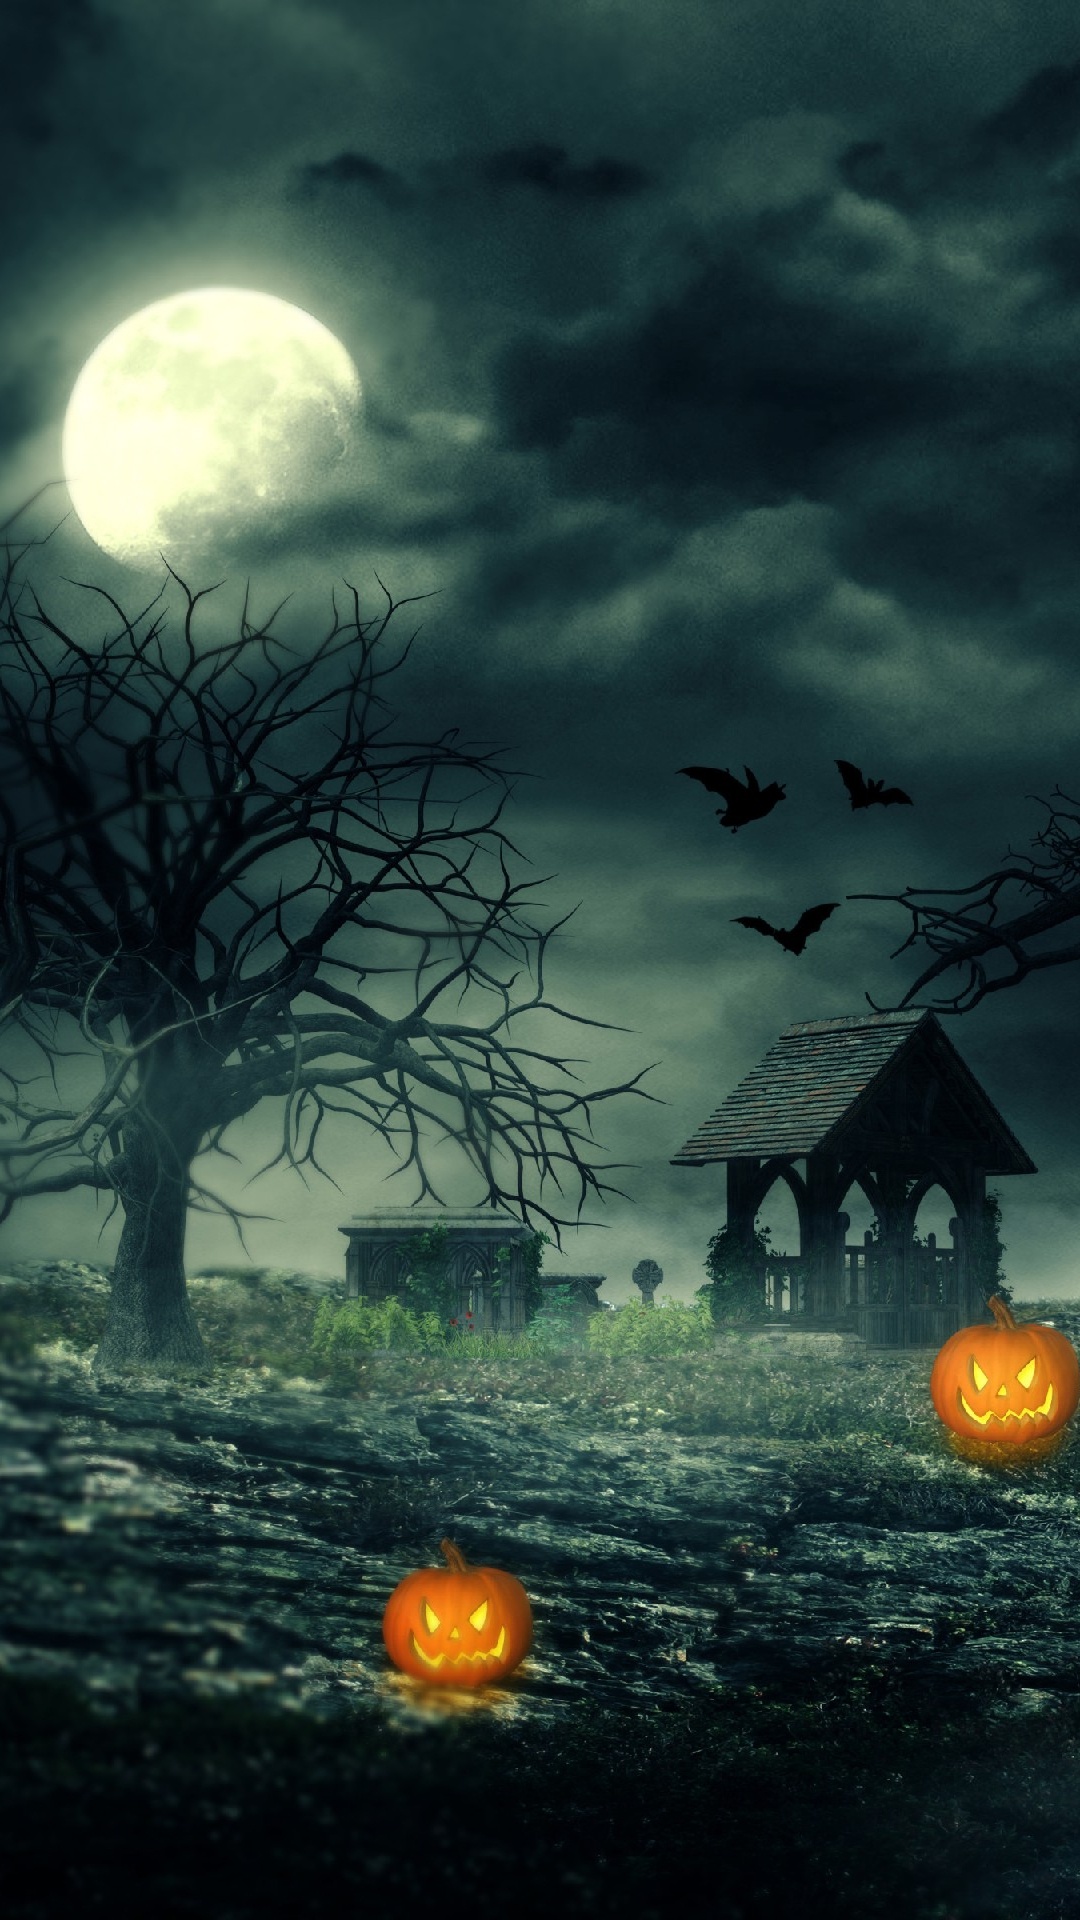 Halloween Haunted House, Haunted House, Haunted Attraction, Nature, Moonlight. Wallpaper in 1080x1920 Resolution